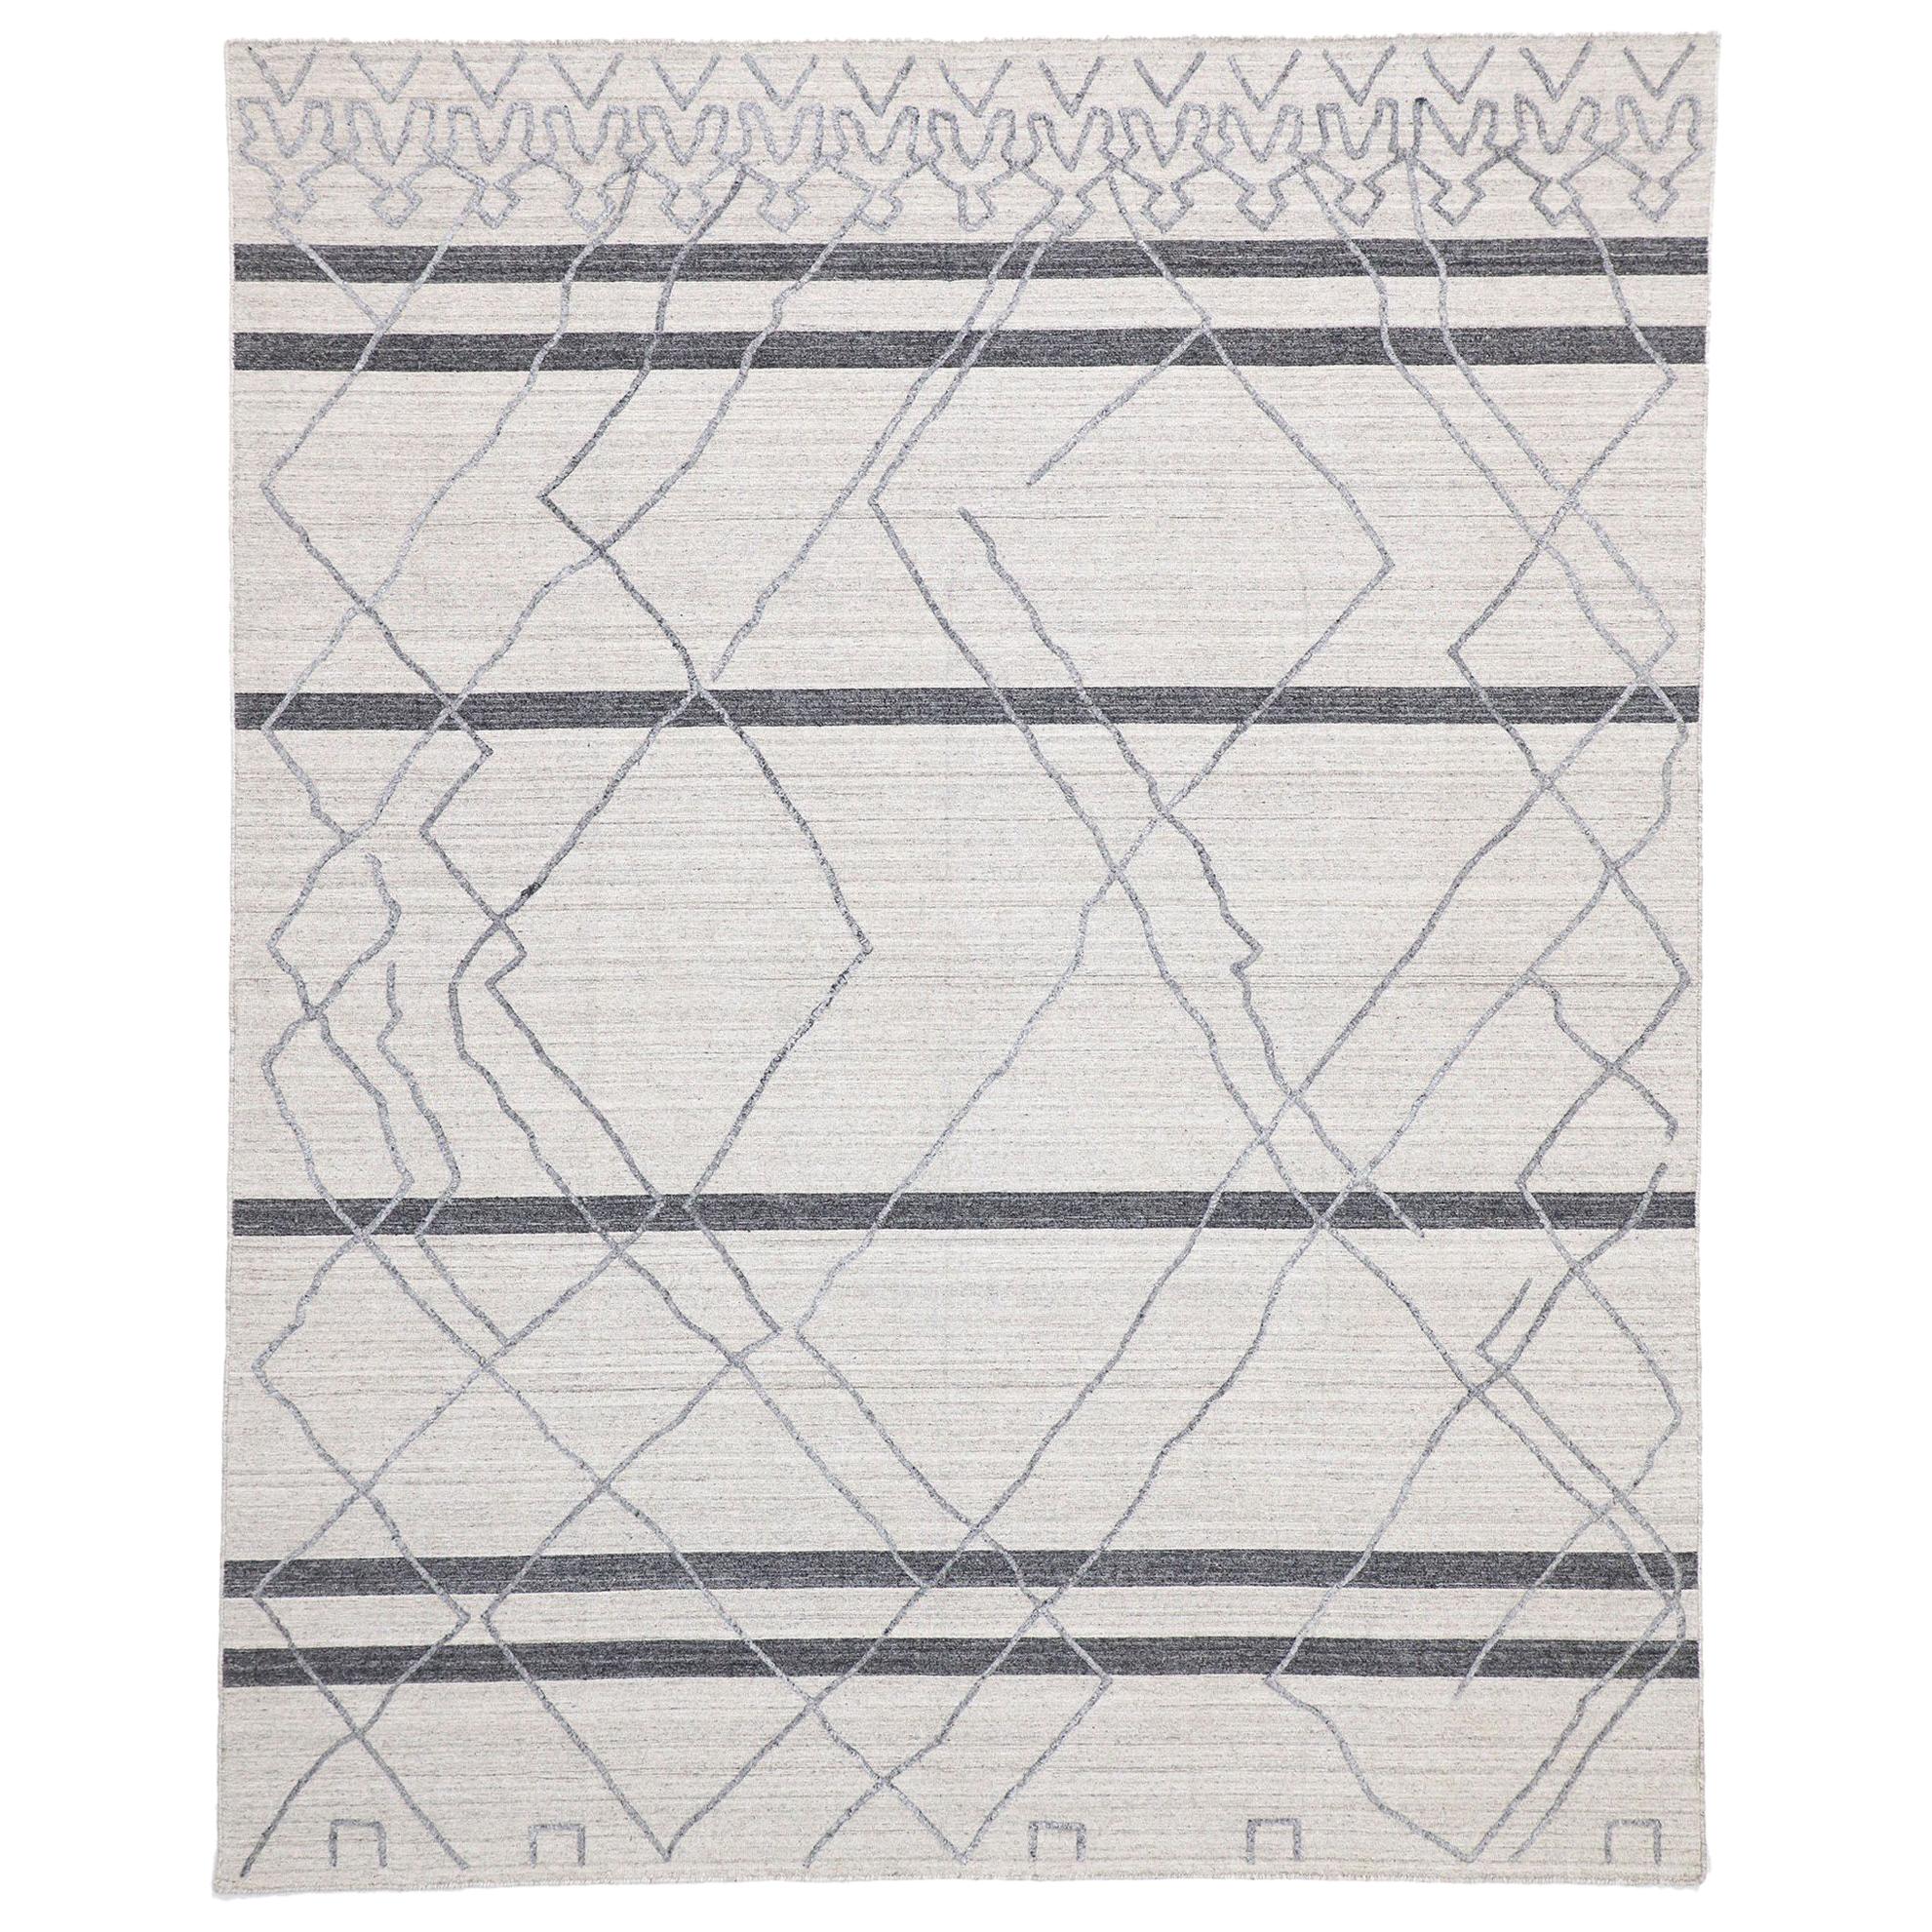 Neuer grauer moderner strukturierter Teppich mit erhabener marokkanischem Spaliermuster, neu